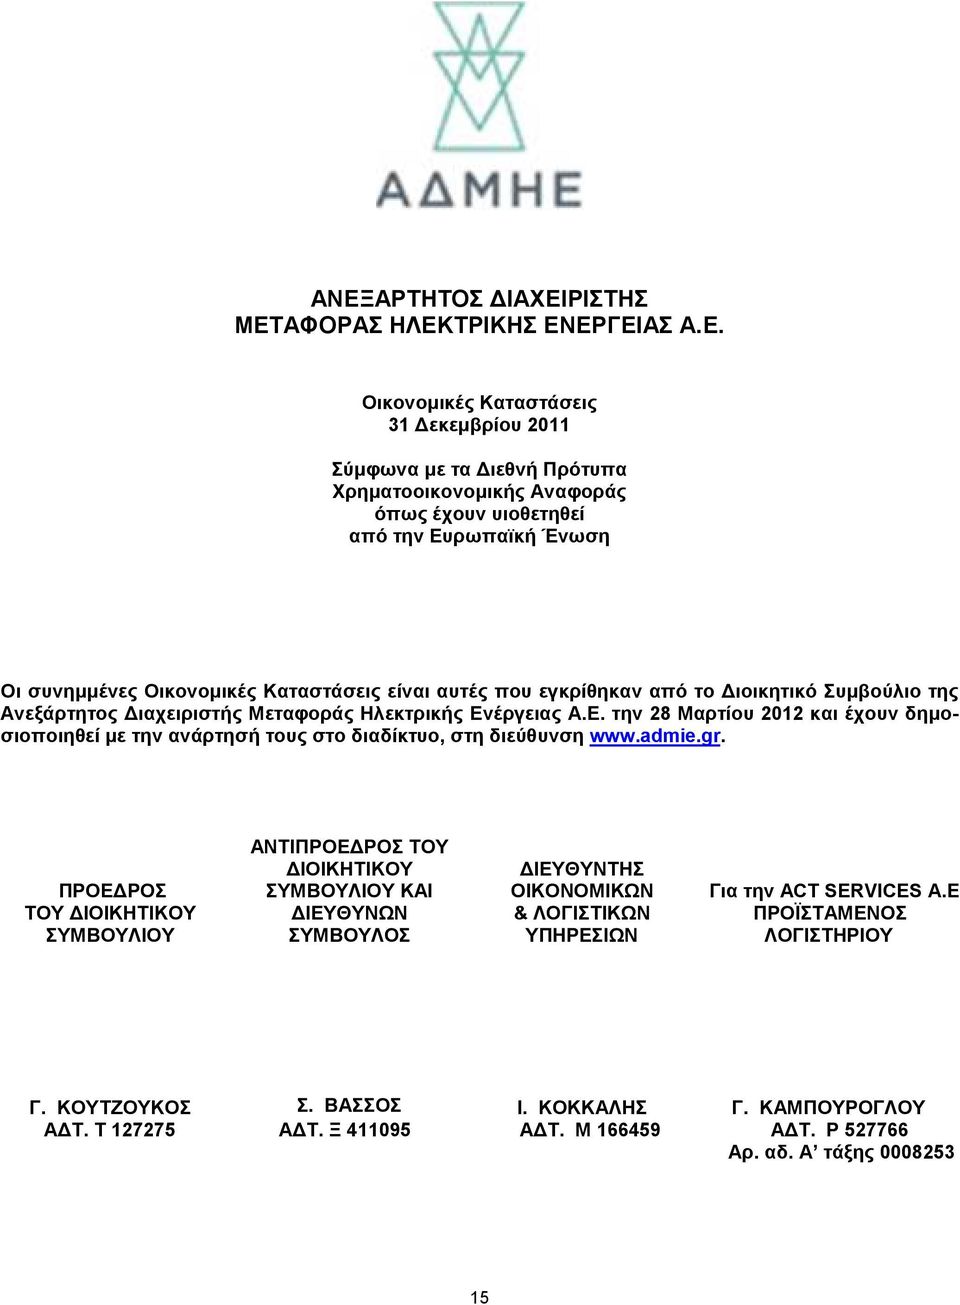 έργειας Α.Ε. την 28 Μαρτίου 2012 και έχουν δηµοσιοποιηθεί µε την ανάρτησή τους στο διαδίκτυο, στη διεύθυνση www.admie.gr.